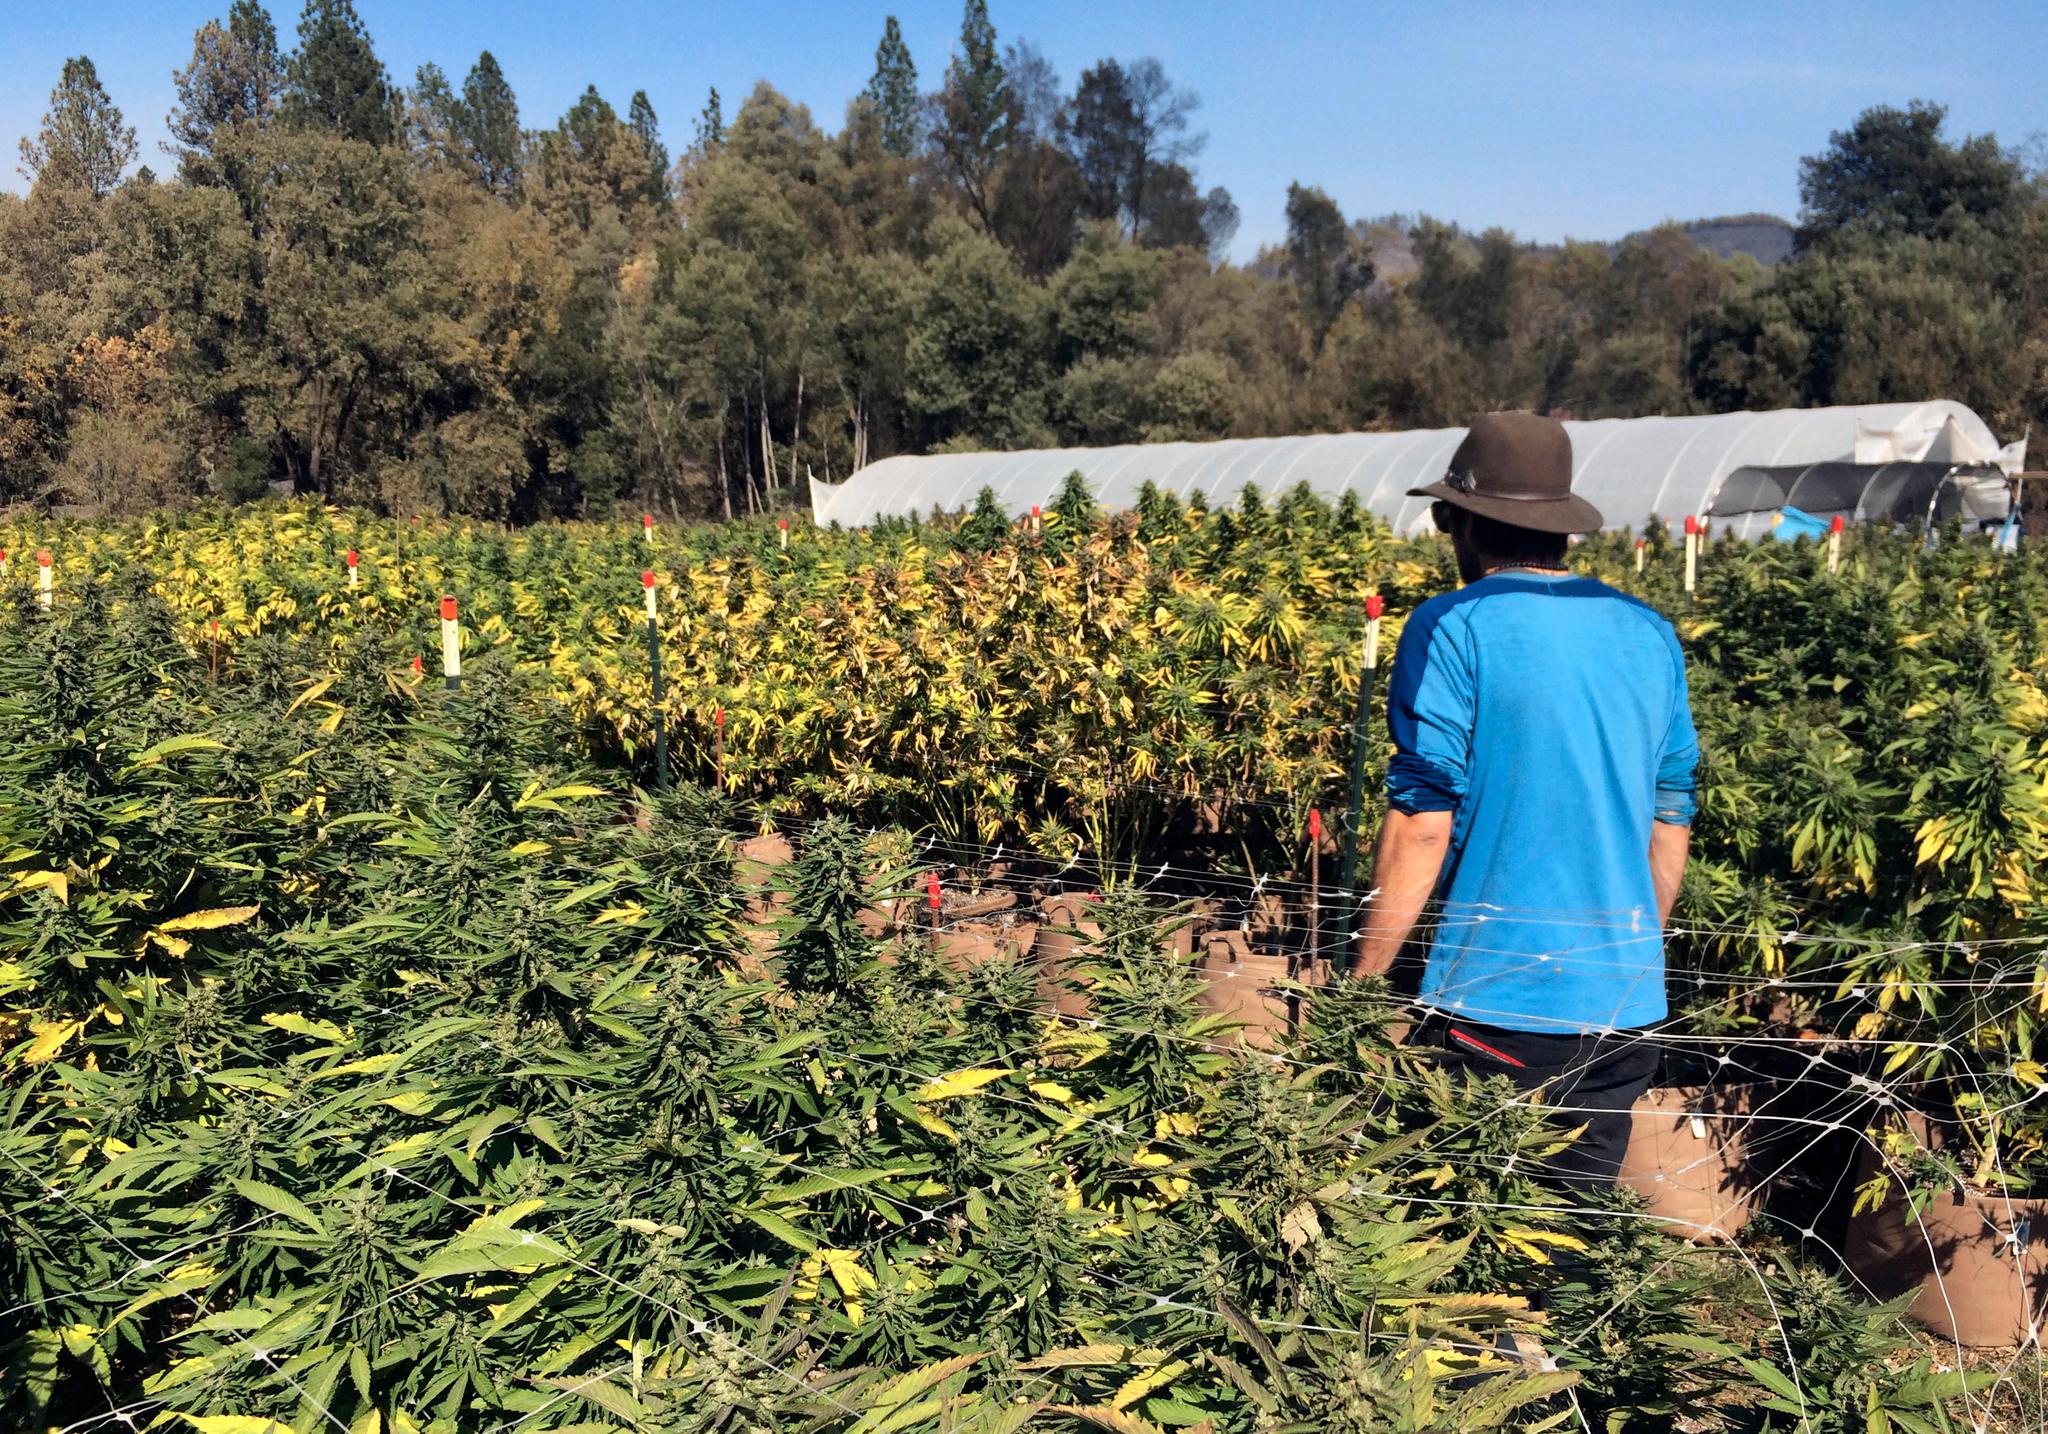 Cannabisplantasjer som denne, er vanlige i California. Delstaten er én av 19 i USA der cannabis er legalisert. 